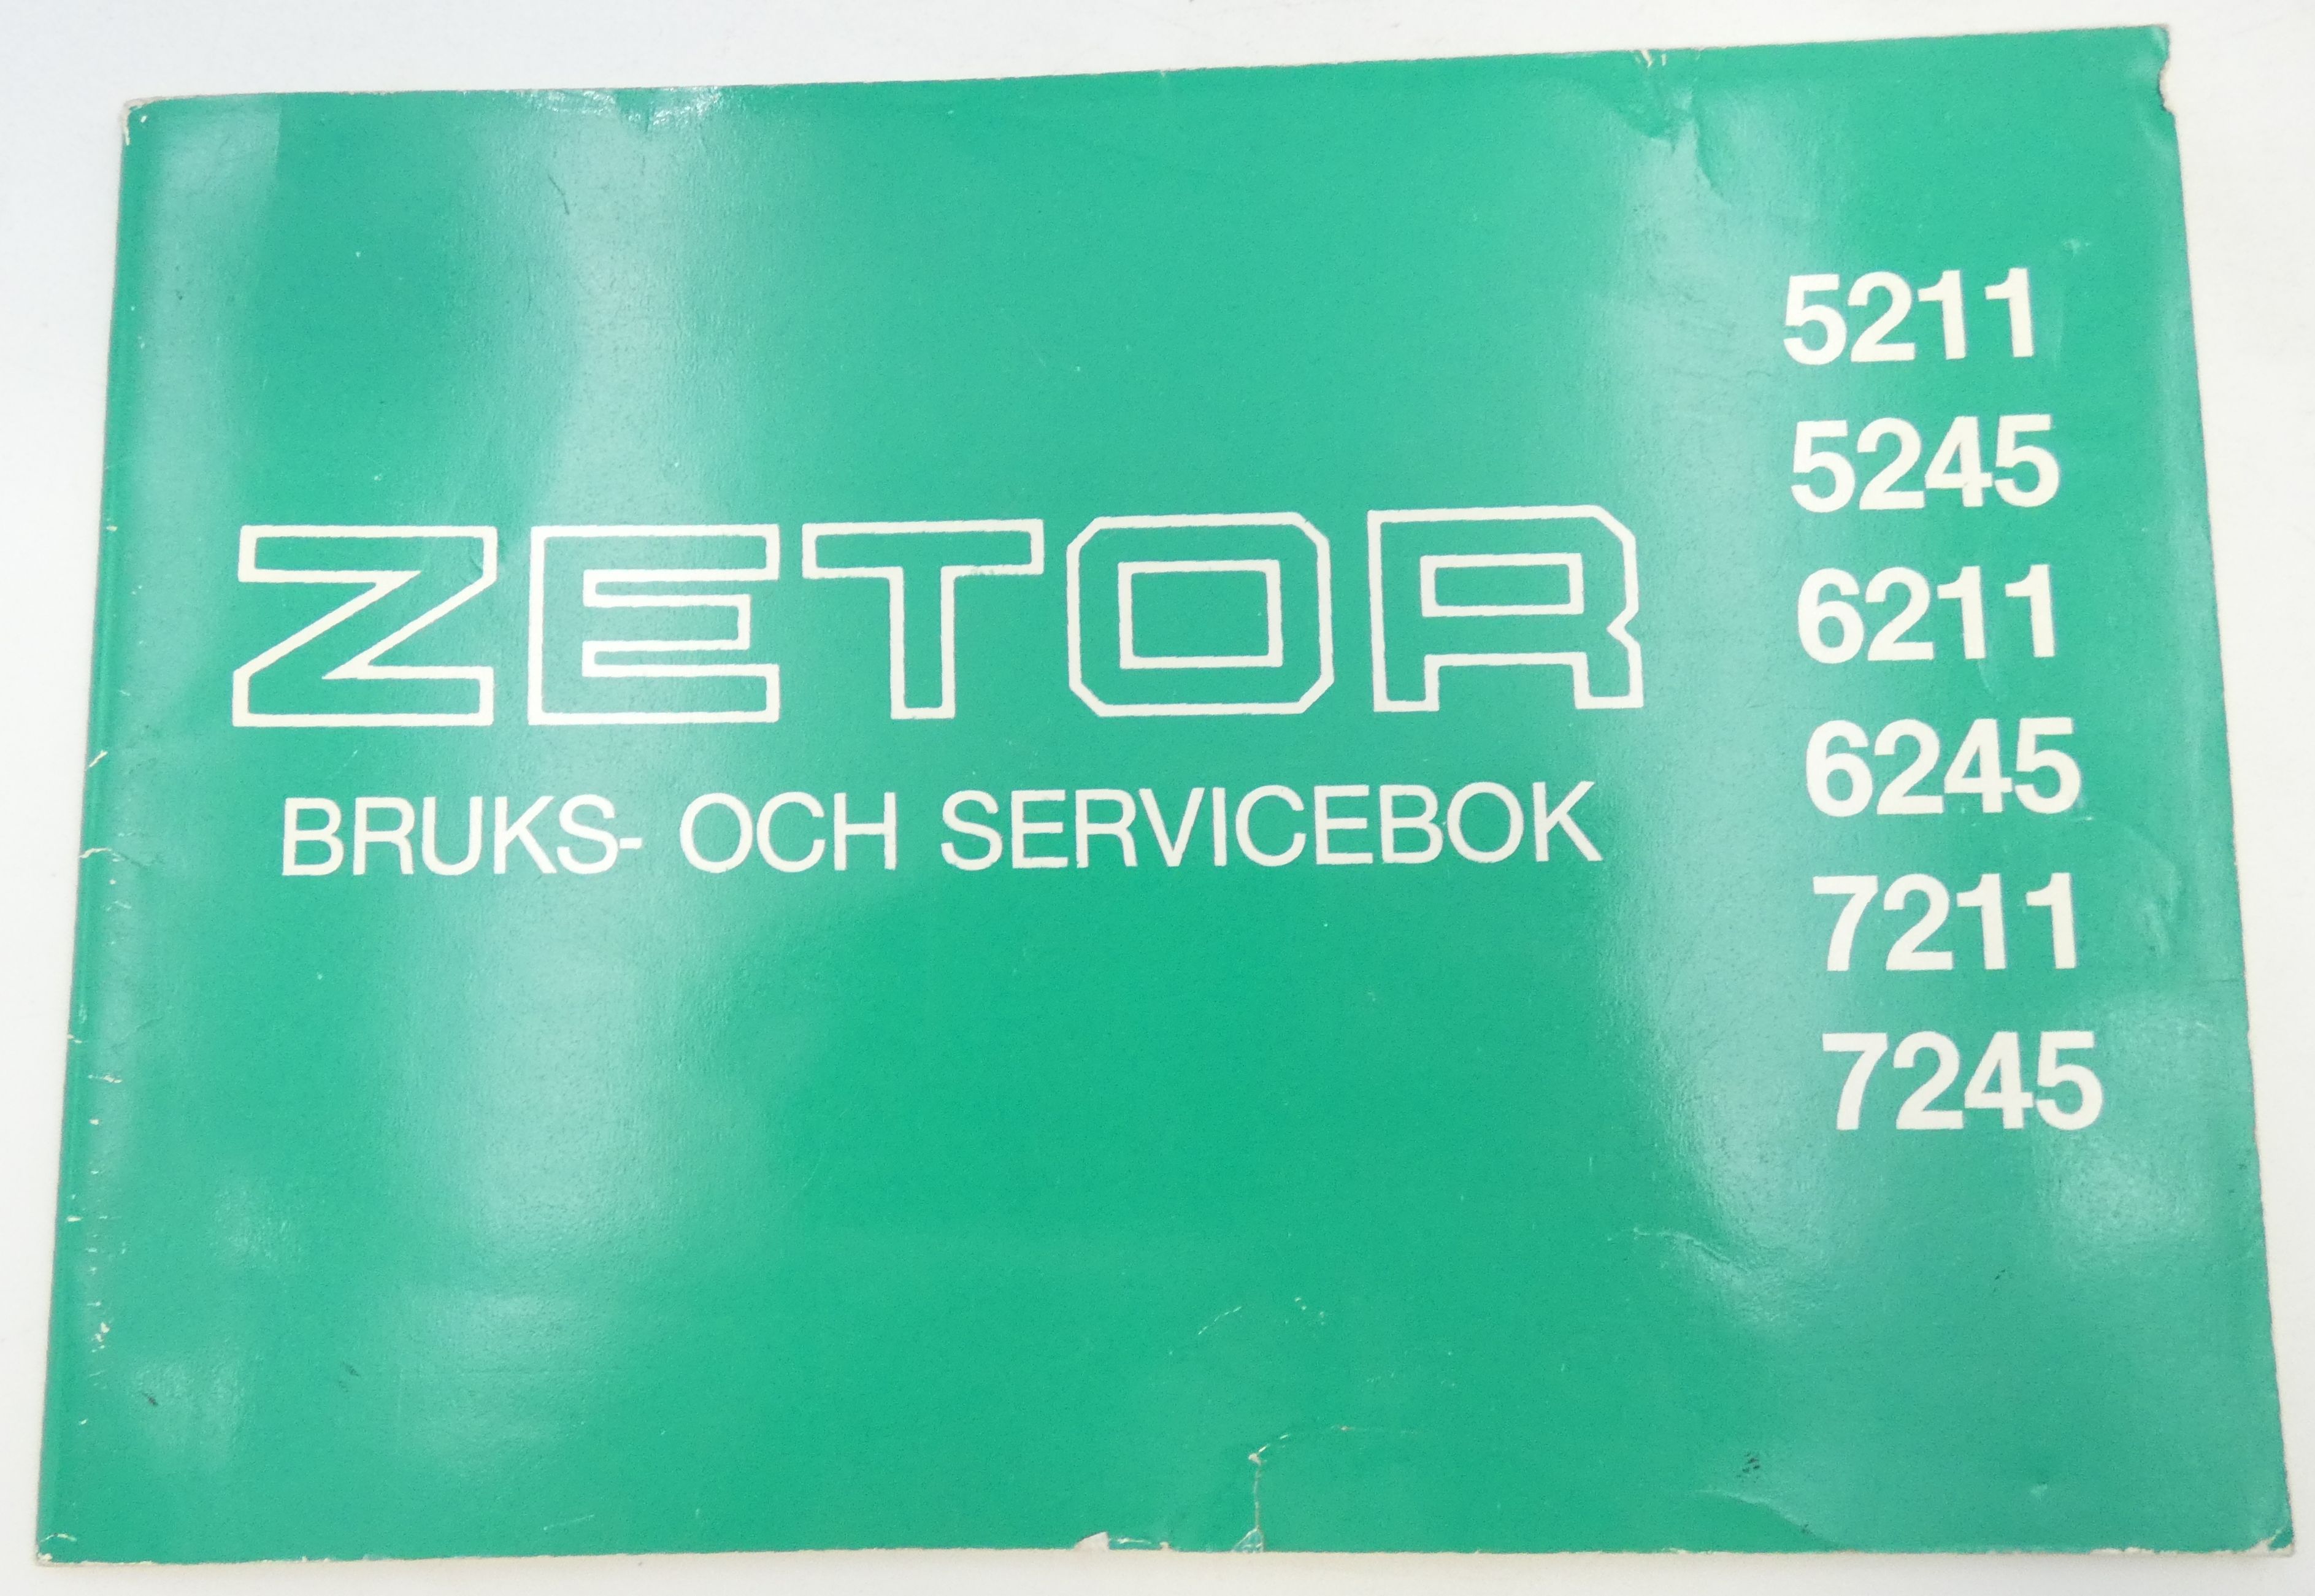 Zetor 5211, 5245, 6211, 6245, 7211, 7245 bruks och servicebok